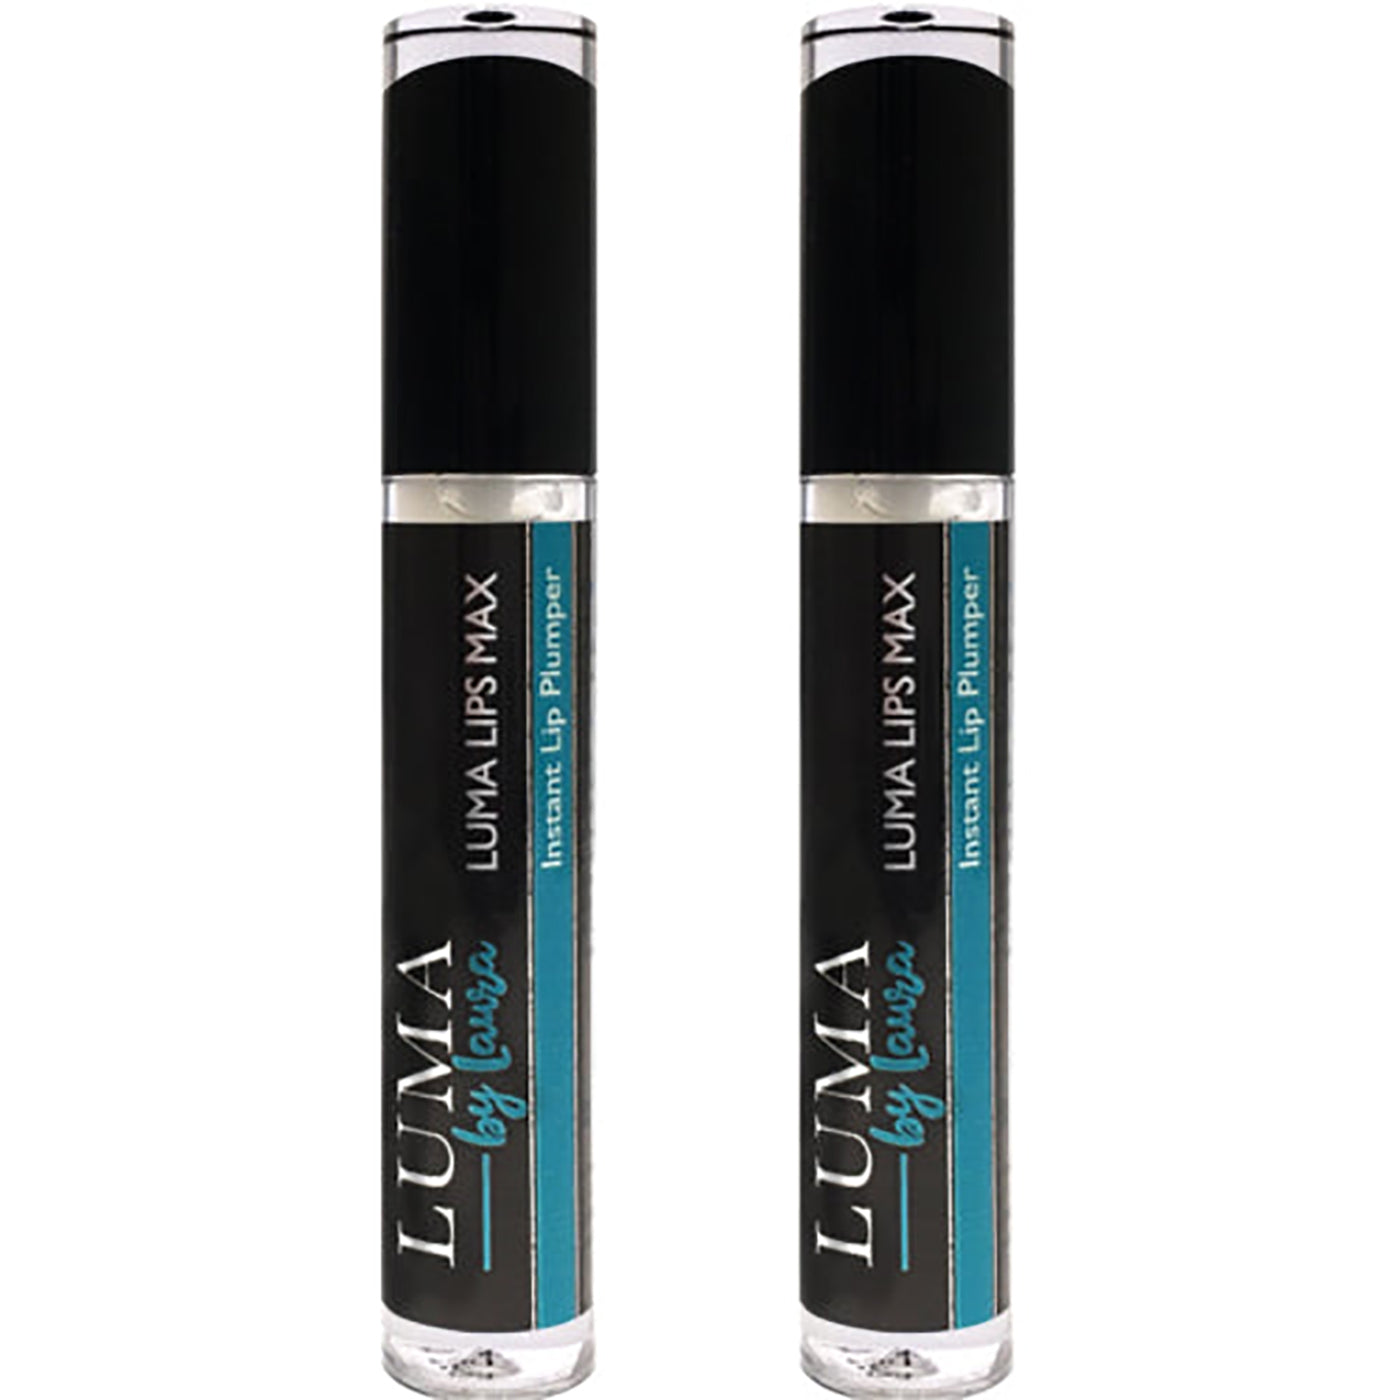 Lip Plumper Gloss Instant Volumizing Lip Plump Enhancer for Fuller